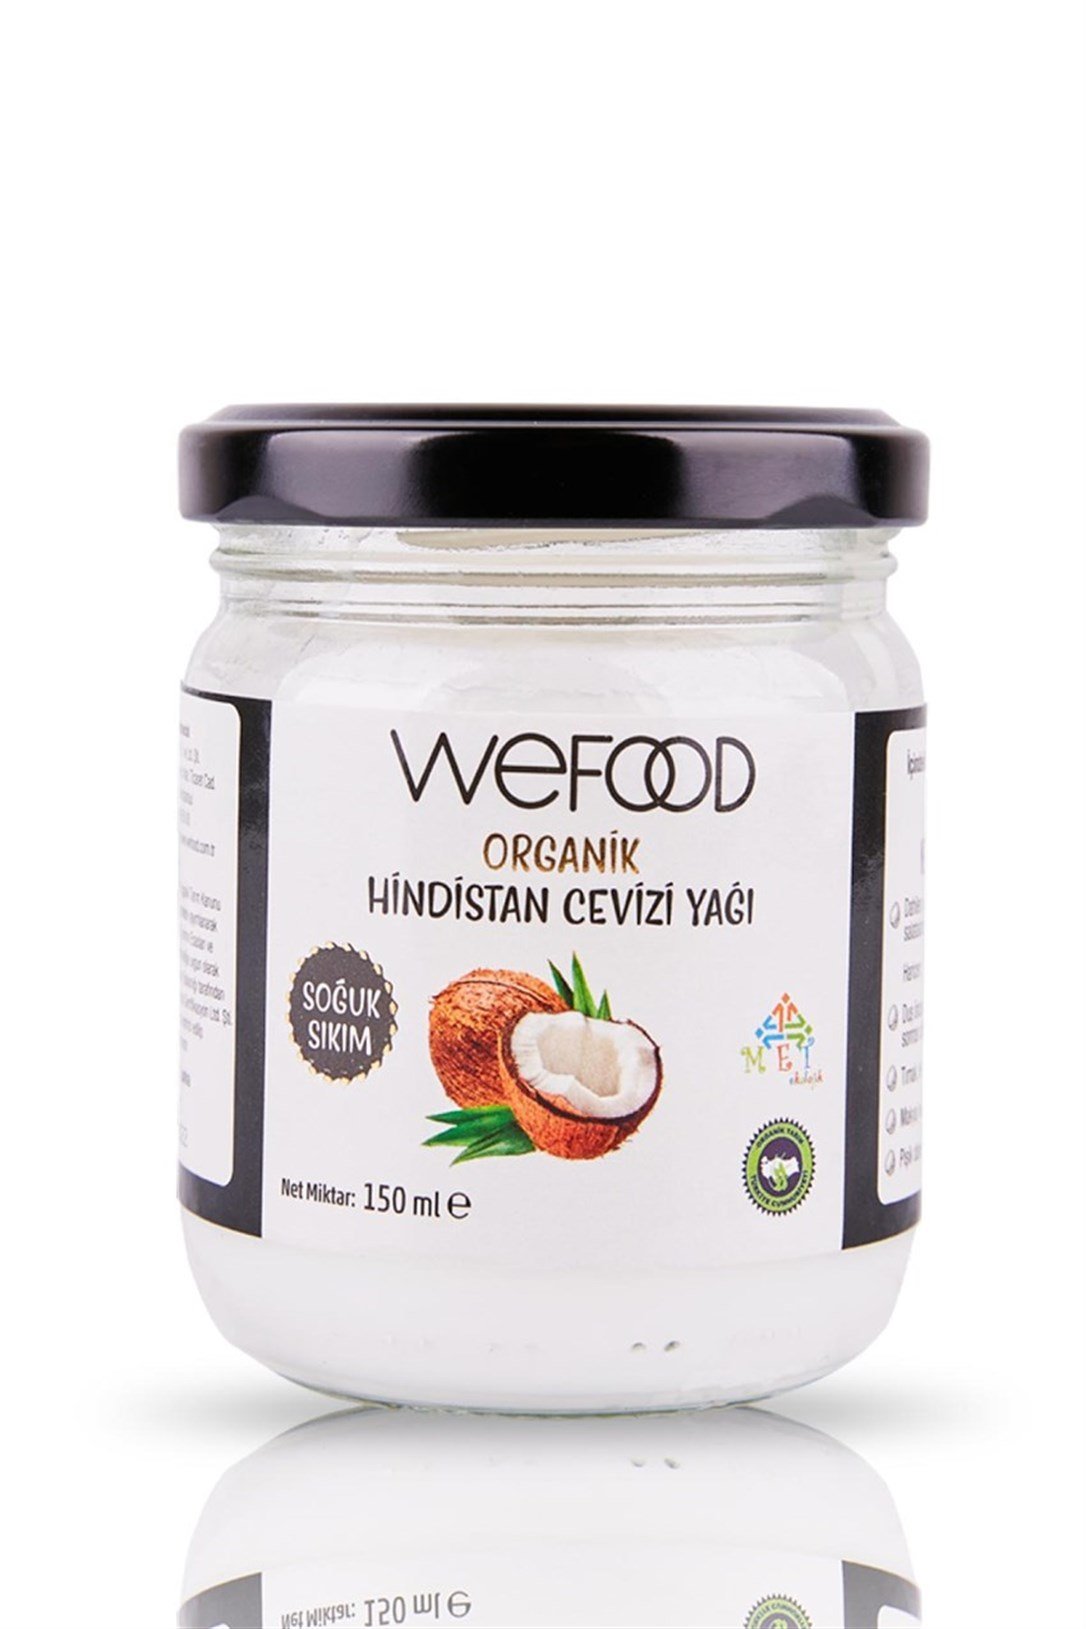 Wefood Organik Hindistan Cevizi Yağı 150 ml (Soğuk Sıkım) - Gurmejet